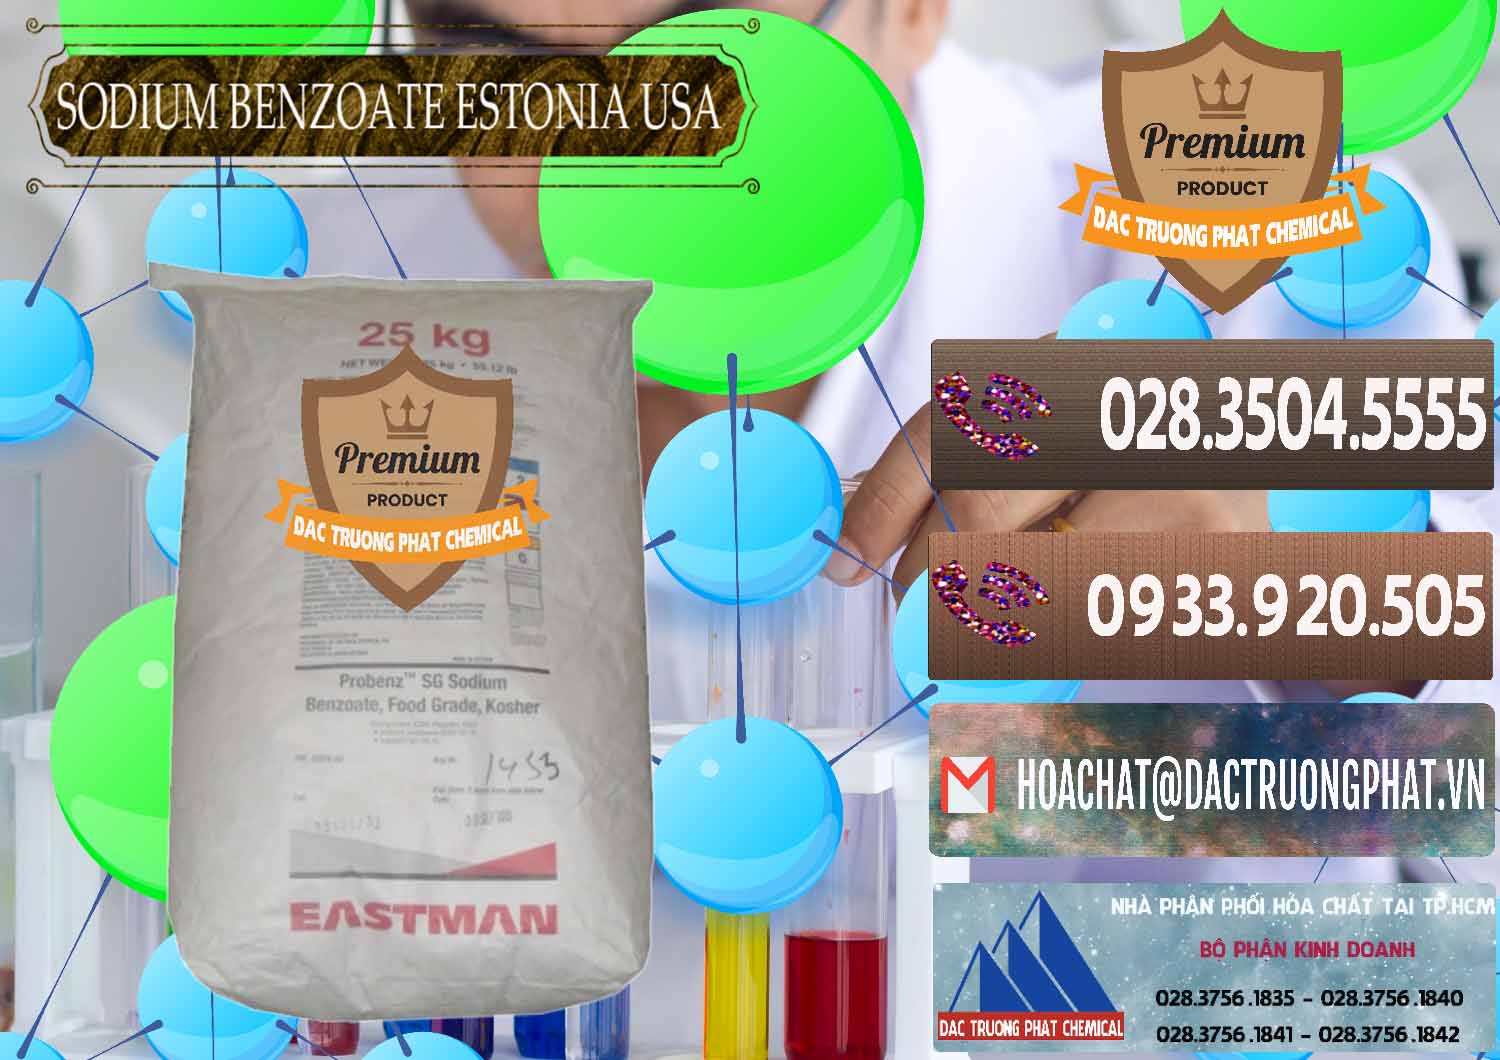 Cty bán _ phân phối Sodium Benzoate - Mốc Bột Estonia Mỹ USA - 0468 - Đơn vị chuyên bán - phân phối hóa chất tại TP.HCM - hoachatviet.net